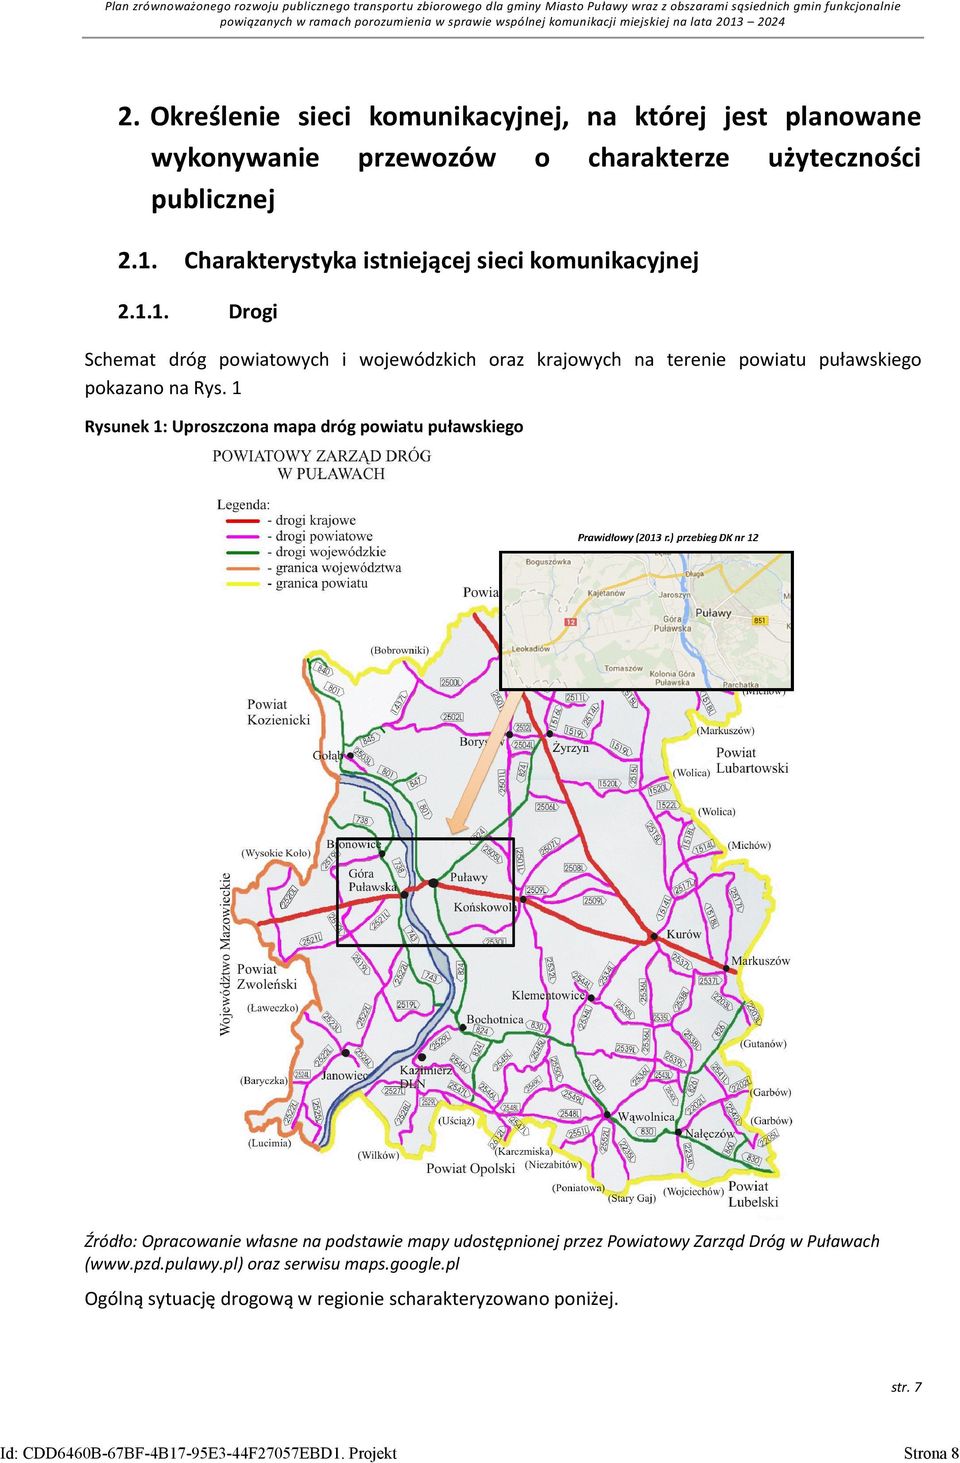 2.1.1. Charakterystyka istniejącej sieci komunikacyjnej Drogi Schemat dróg powiatowych i wojewódzkich oraz krajowych na terenie powiatu puławskiego pokazano na Rys.